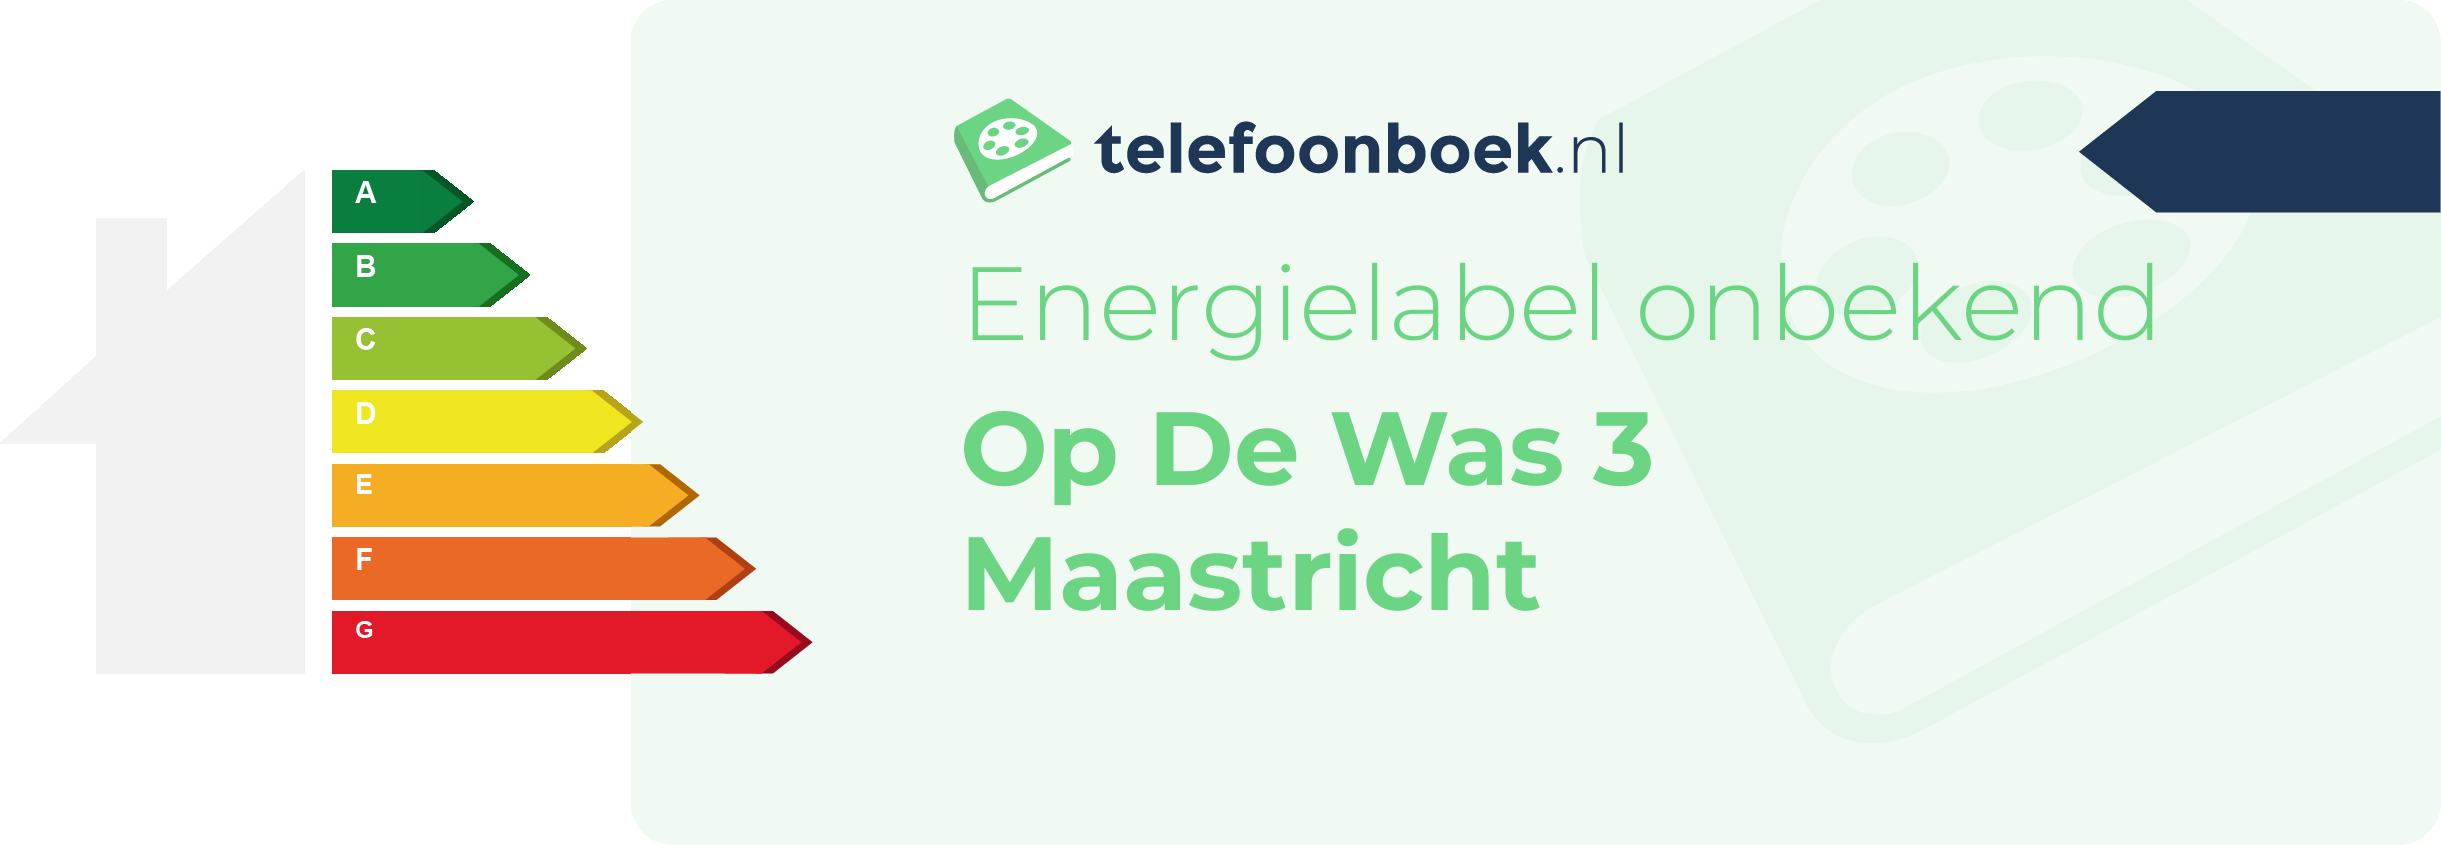 Energielabel Op De Was 3 Maastricht